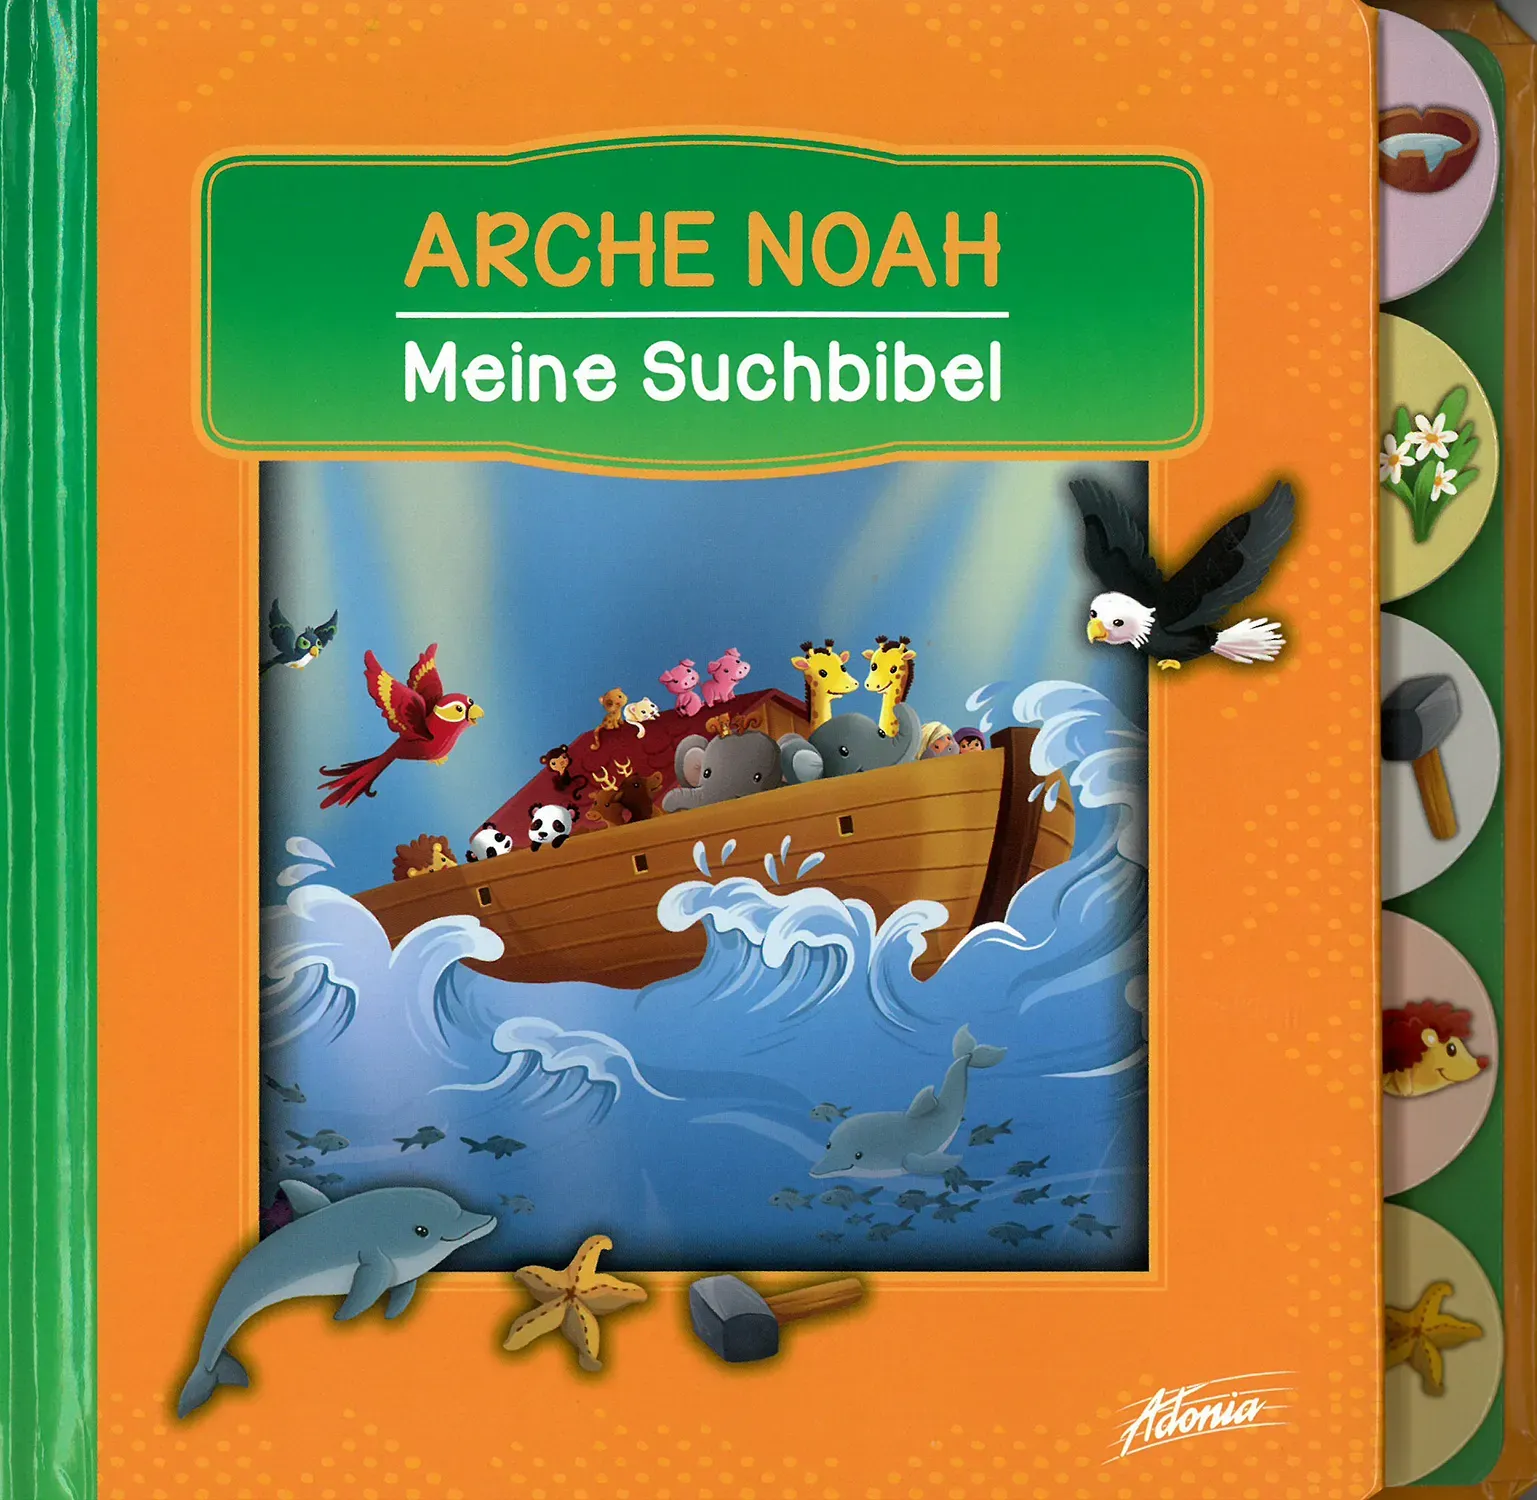 Arche Noah - Meine Suchbibel